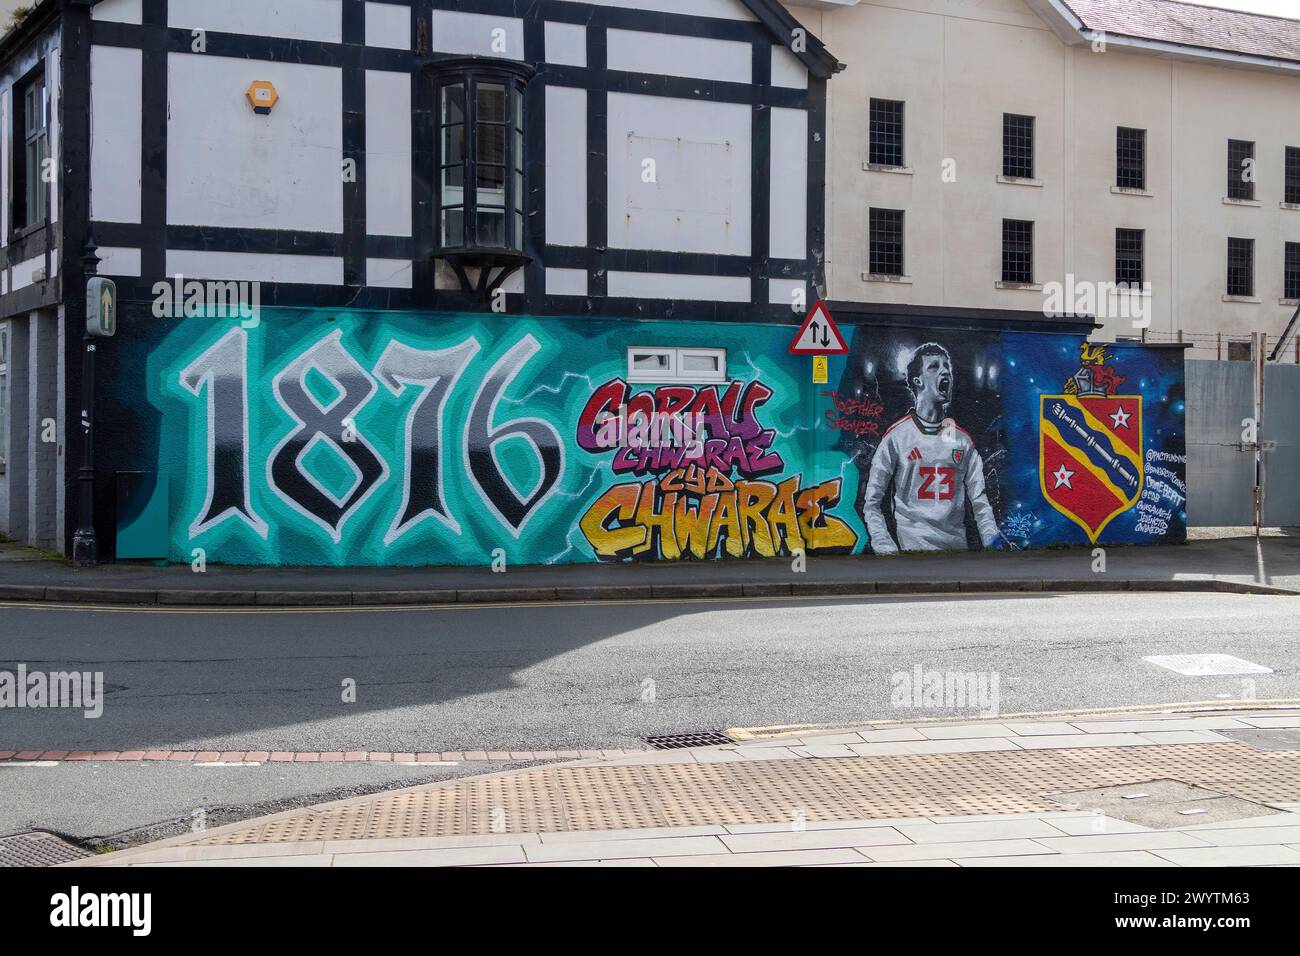 Graffiti, Bangor 1876 Football Club, Bangor, Wales, Great Britain Stock Photo